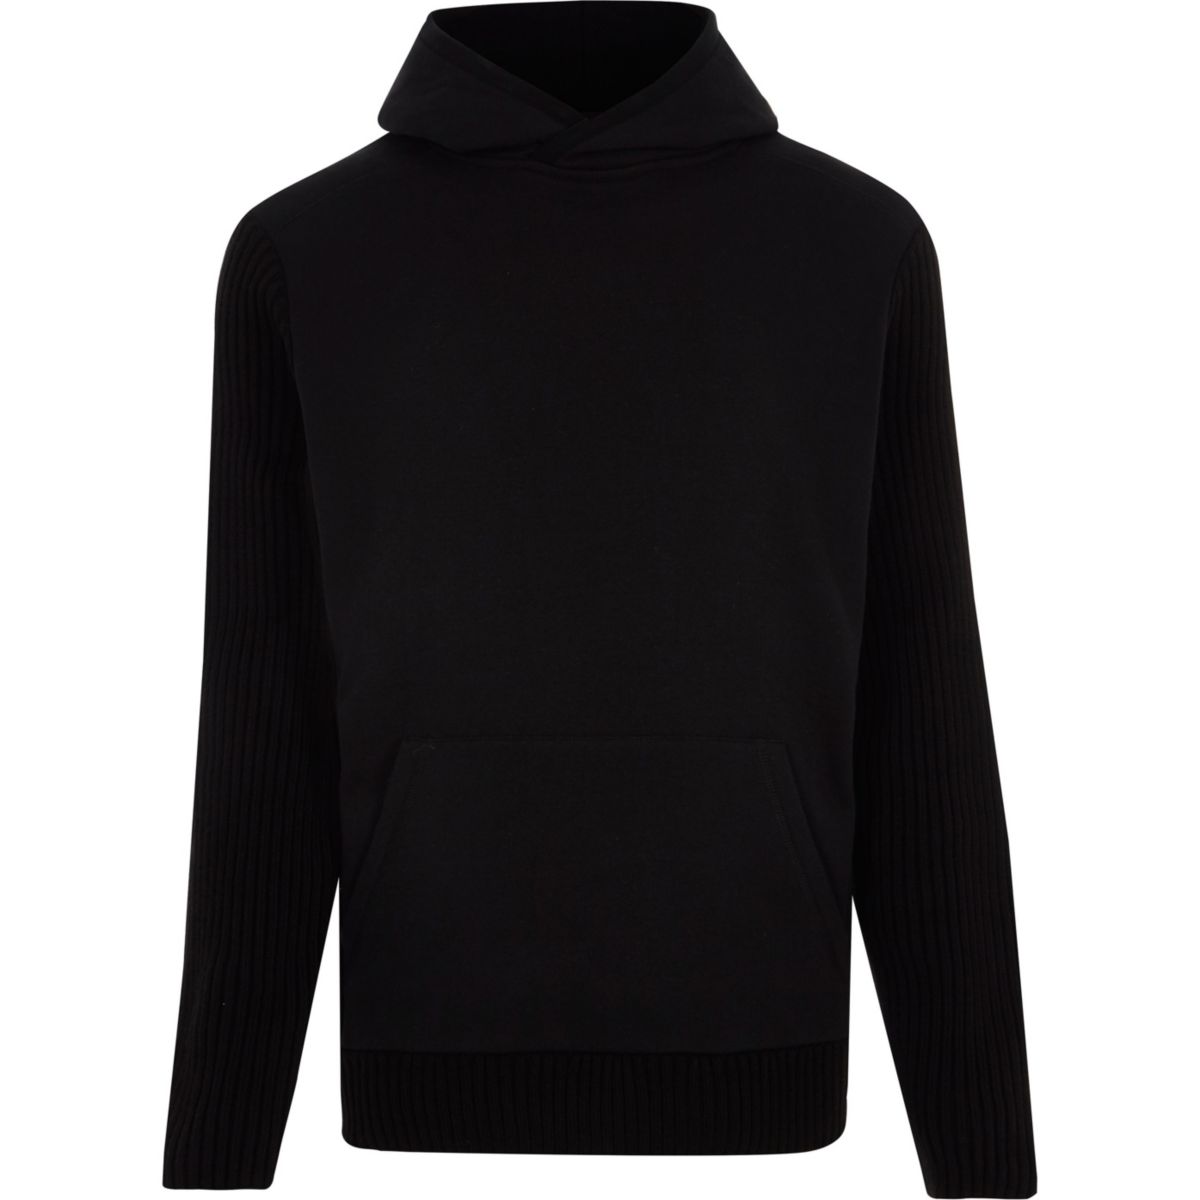 Black long sleeve slim fit ribbed hoodie - Hoodies & Sweatshirts - Sale ...